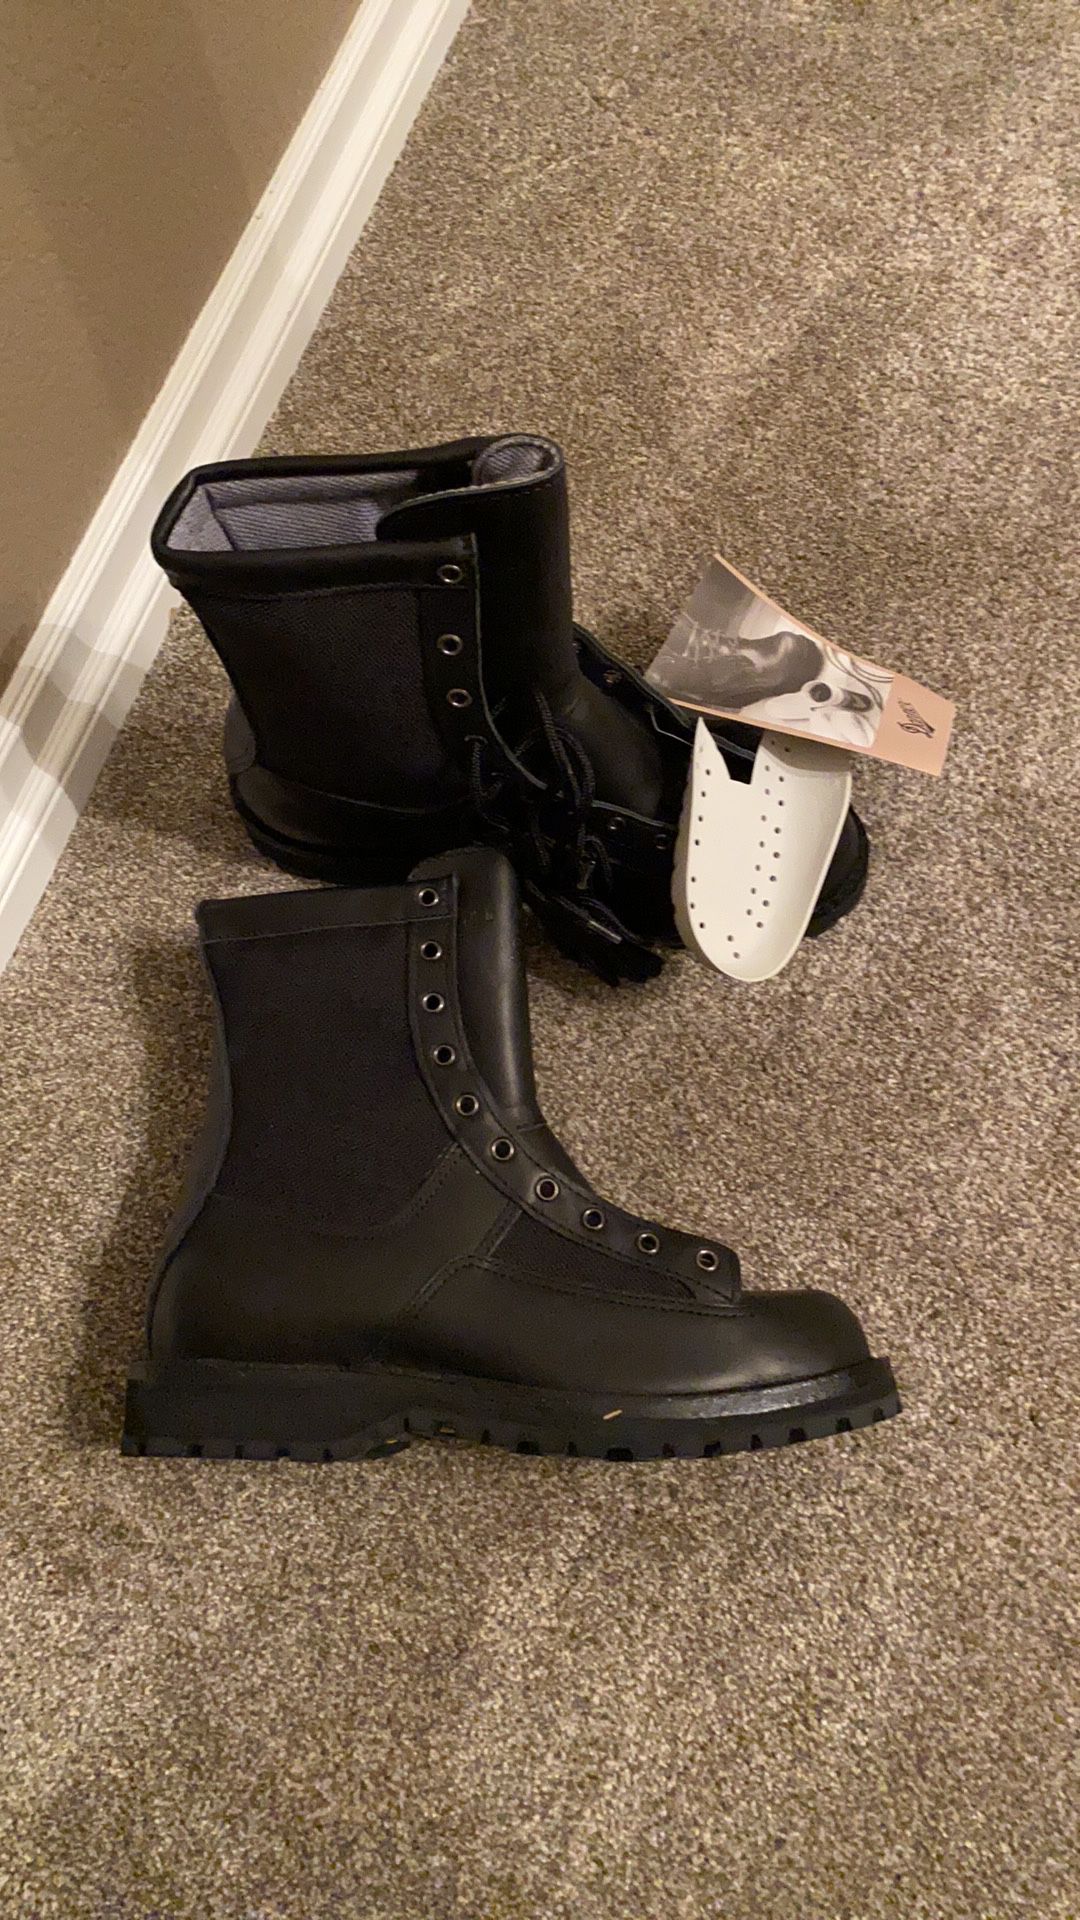 New Danner Waterproof Gore-Tex Men’s Boot